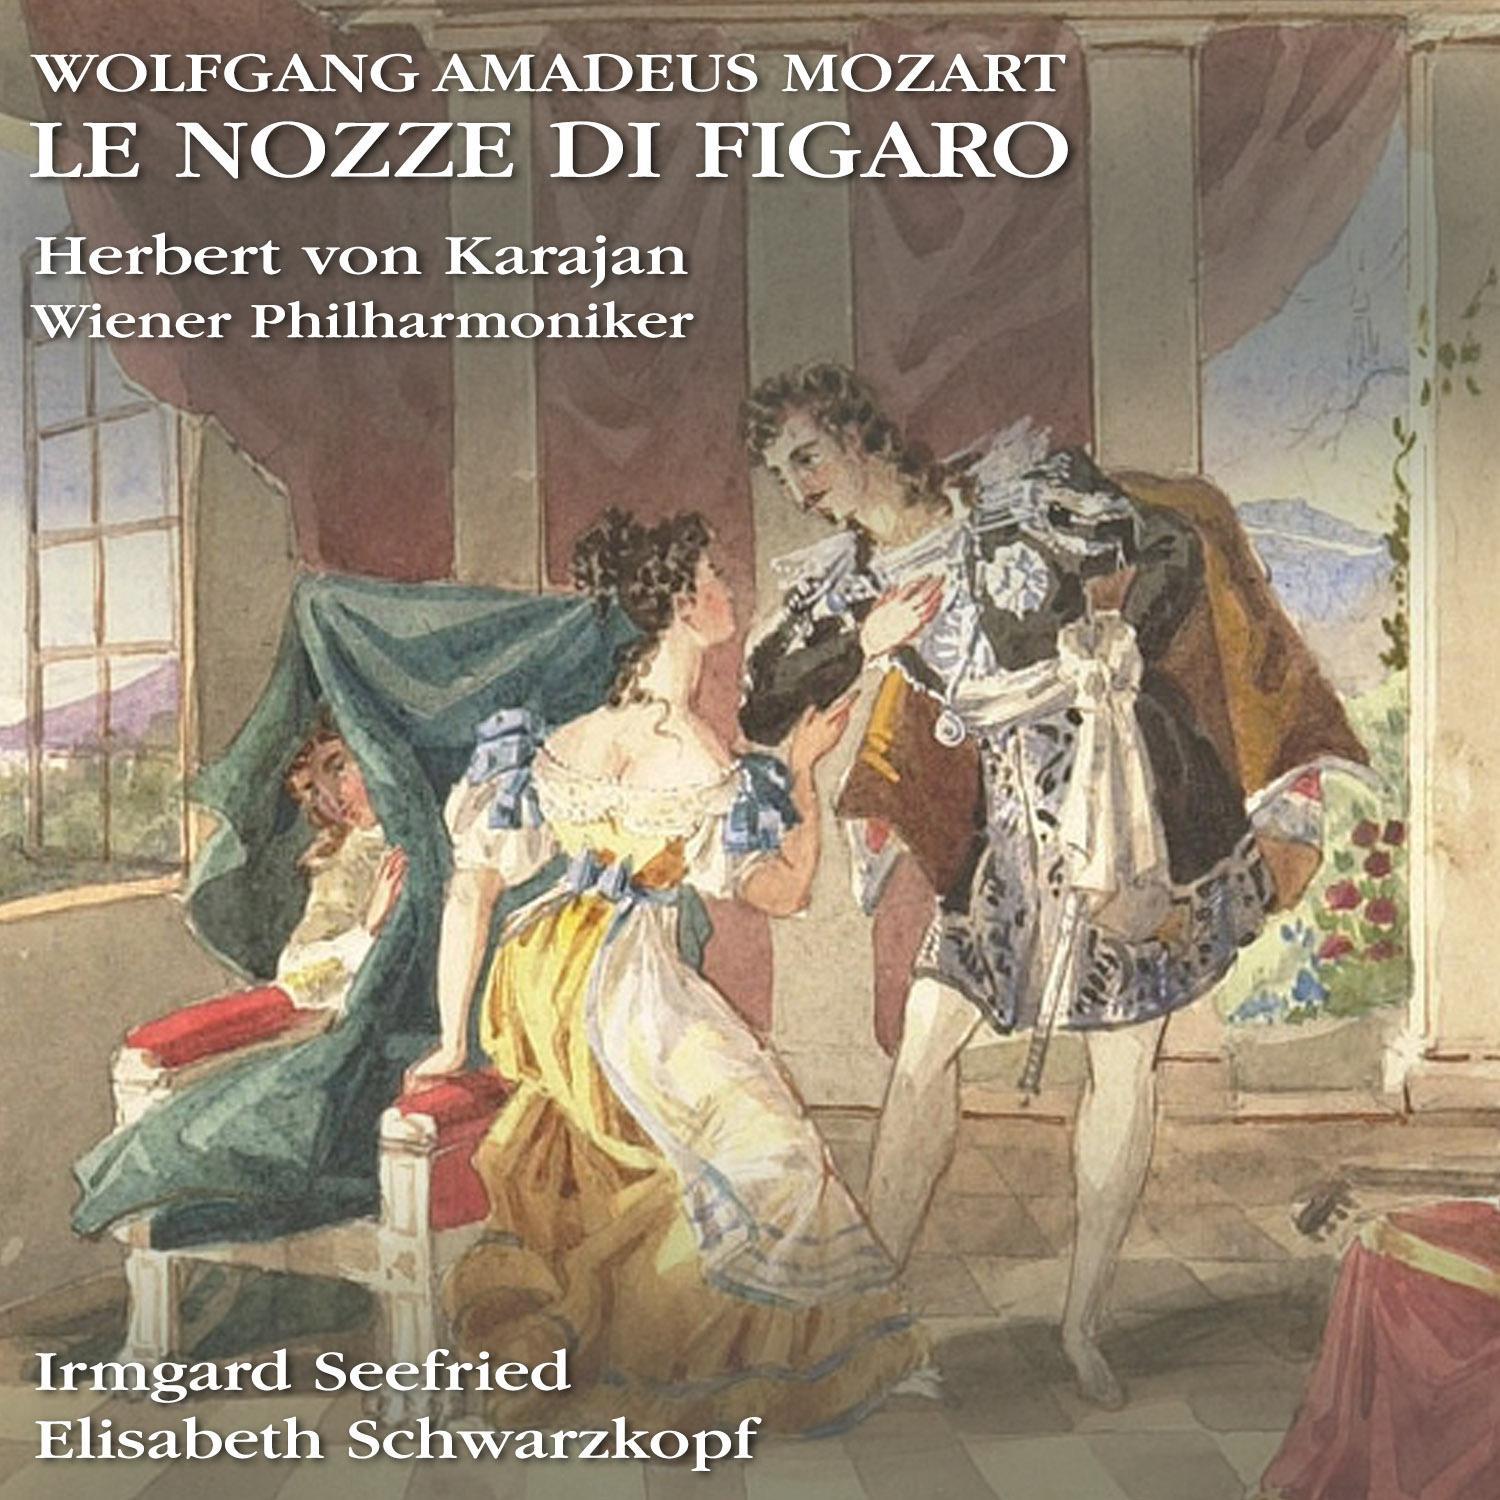 Le nozze di Figaro, Op. K 492, Act 4: Tutto e tranquillo e placido Figaro Susanna  Pace, pace, mio dolce tesoro